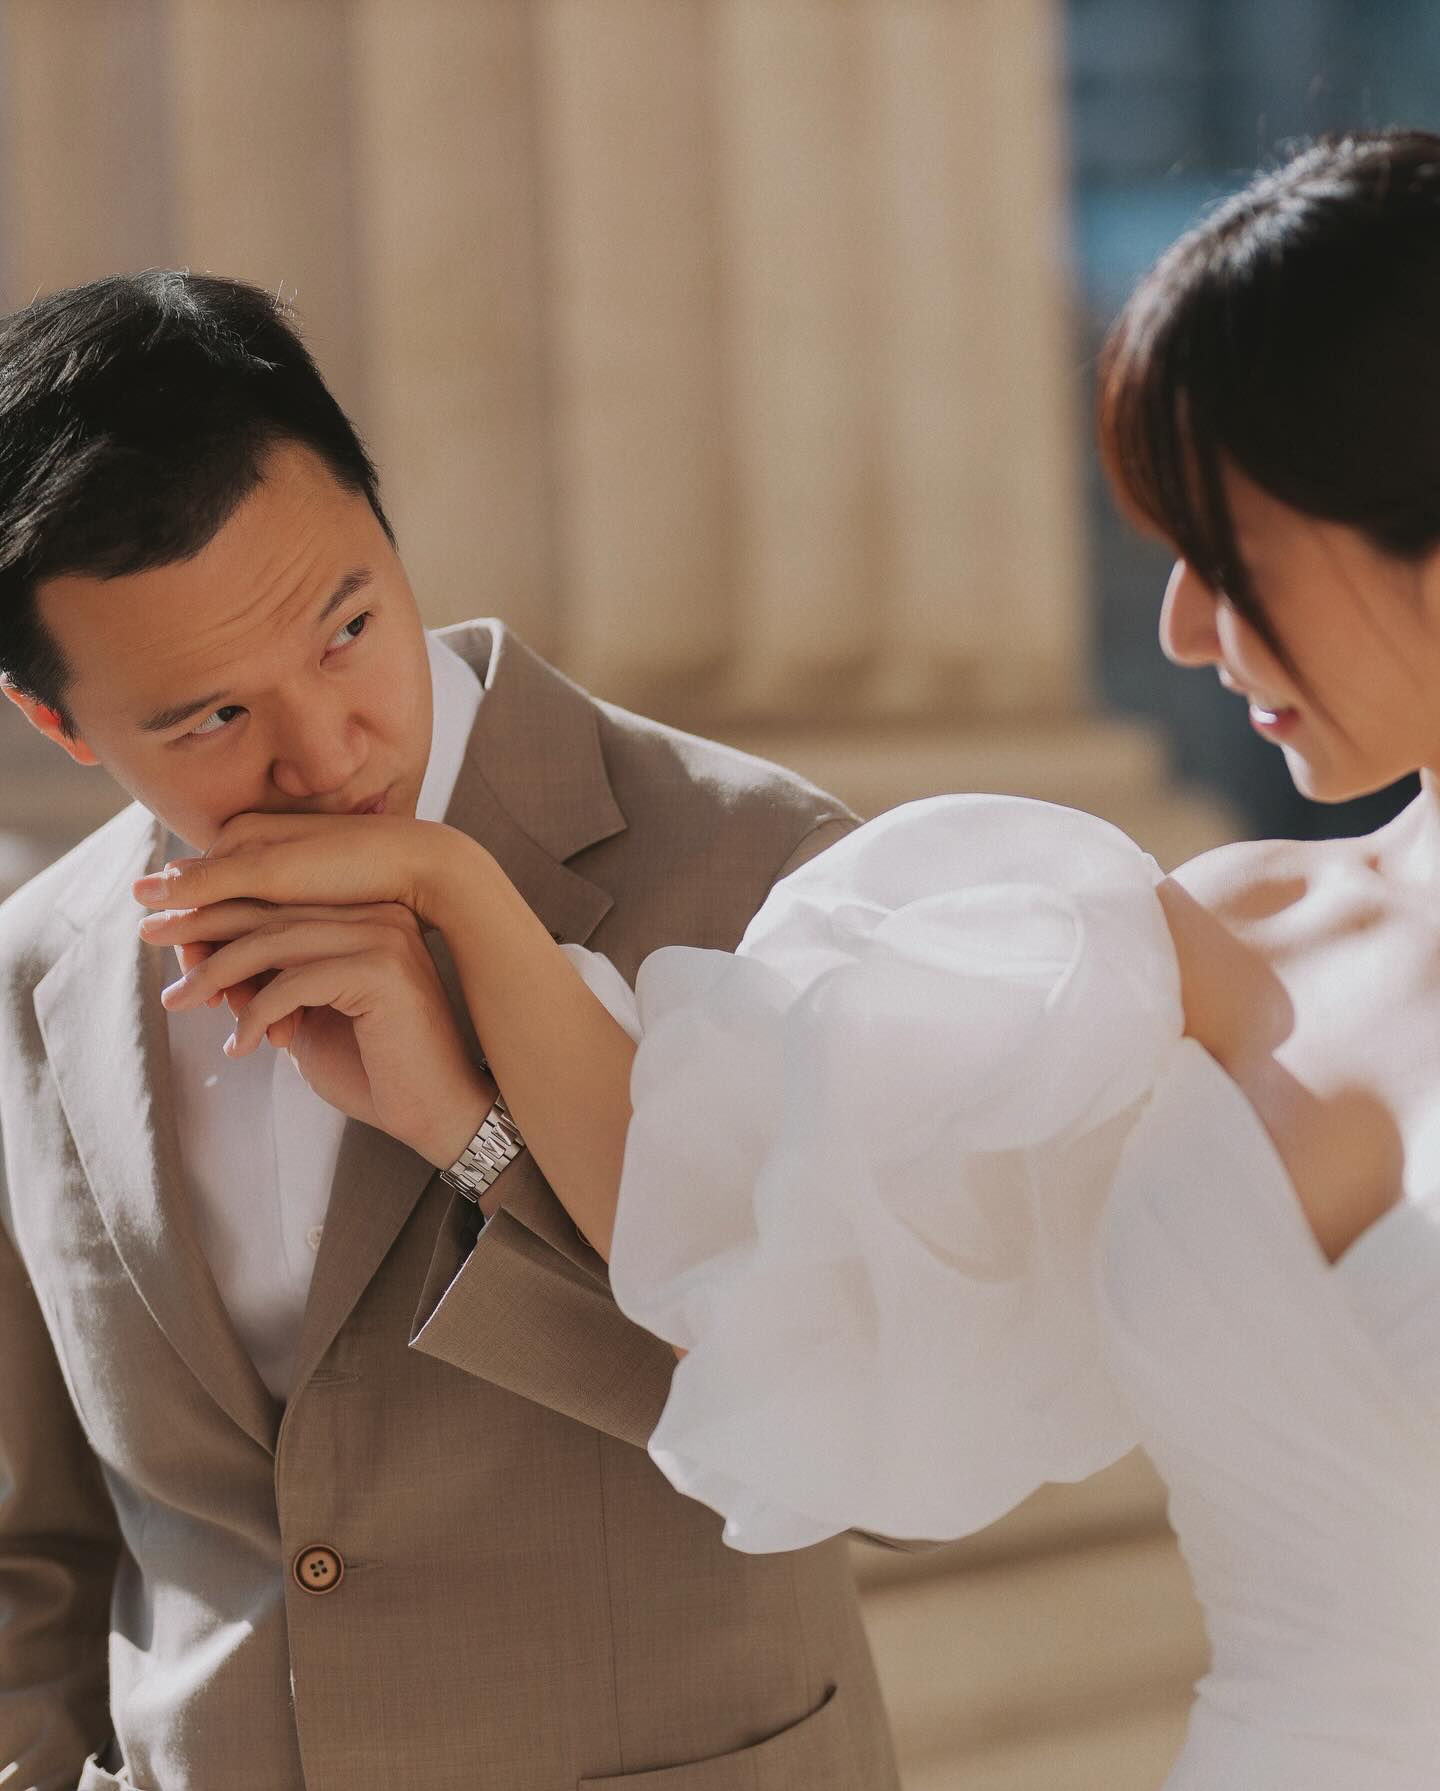 Dàn dâu phụ cực đỉnh trong đám cưới Diễm My 9x: Toàn Hoa - Á hậu, một người vừa cầu hôn bạn trai - ảnh 6